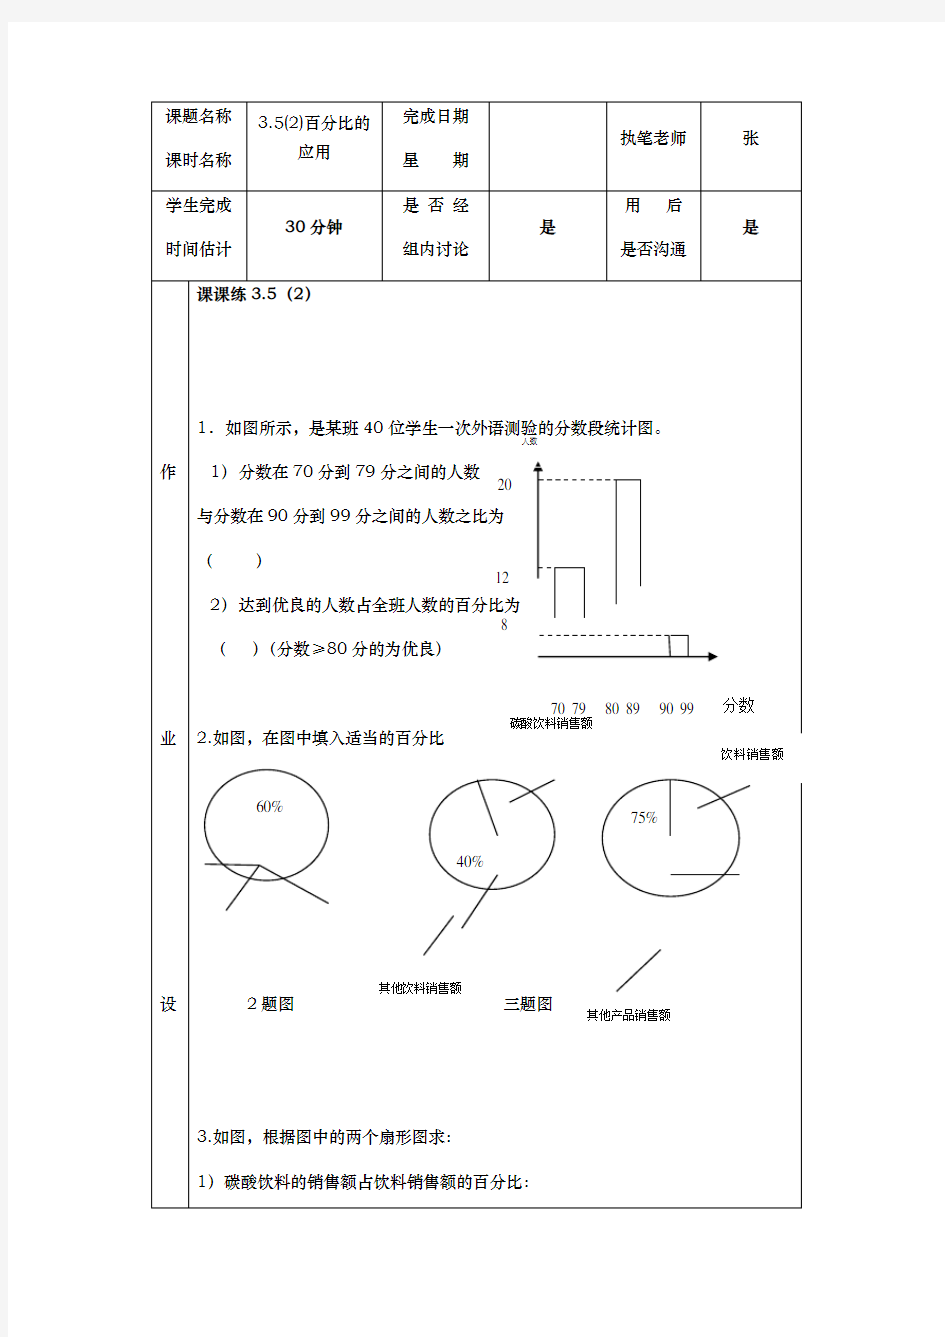 3.5百分比应用(2)-沪教版(上海)六年级数学第一学期练习